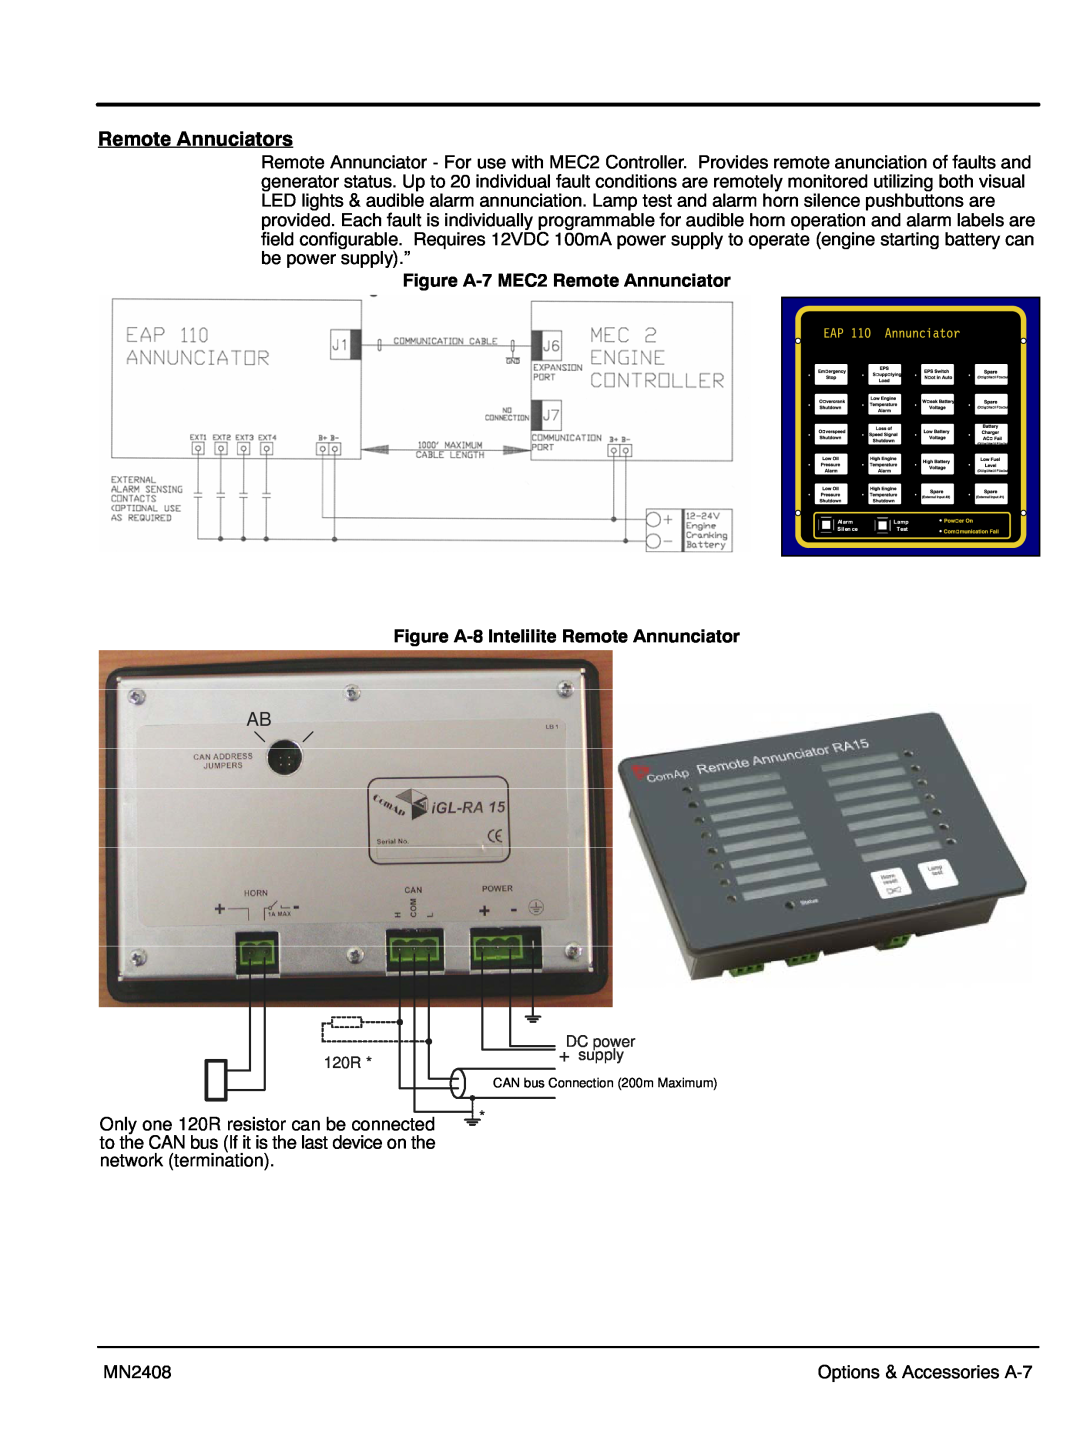 Baldor GLC15, GLC10, GLC60 Remote Annuciators, Figure A‐7 MEC2 Remote Annunciator, Figure A‐8 Intelilite Remote Annunciator 